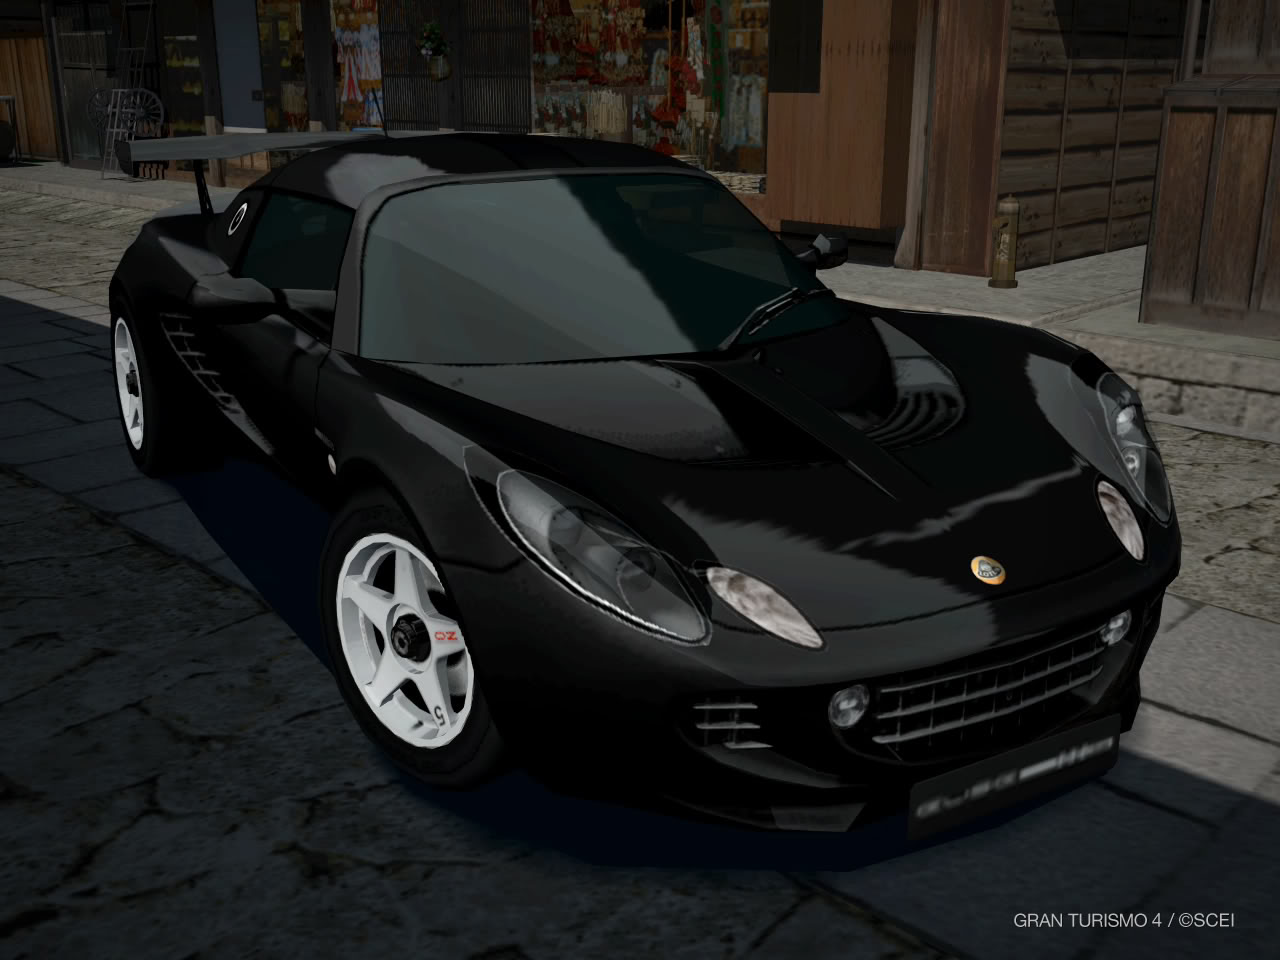 Lotus Elise 111 S